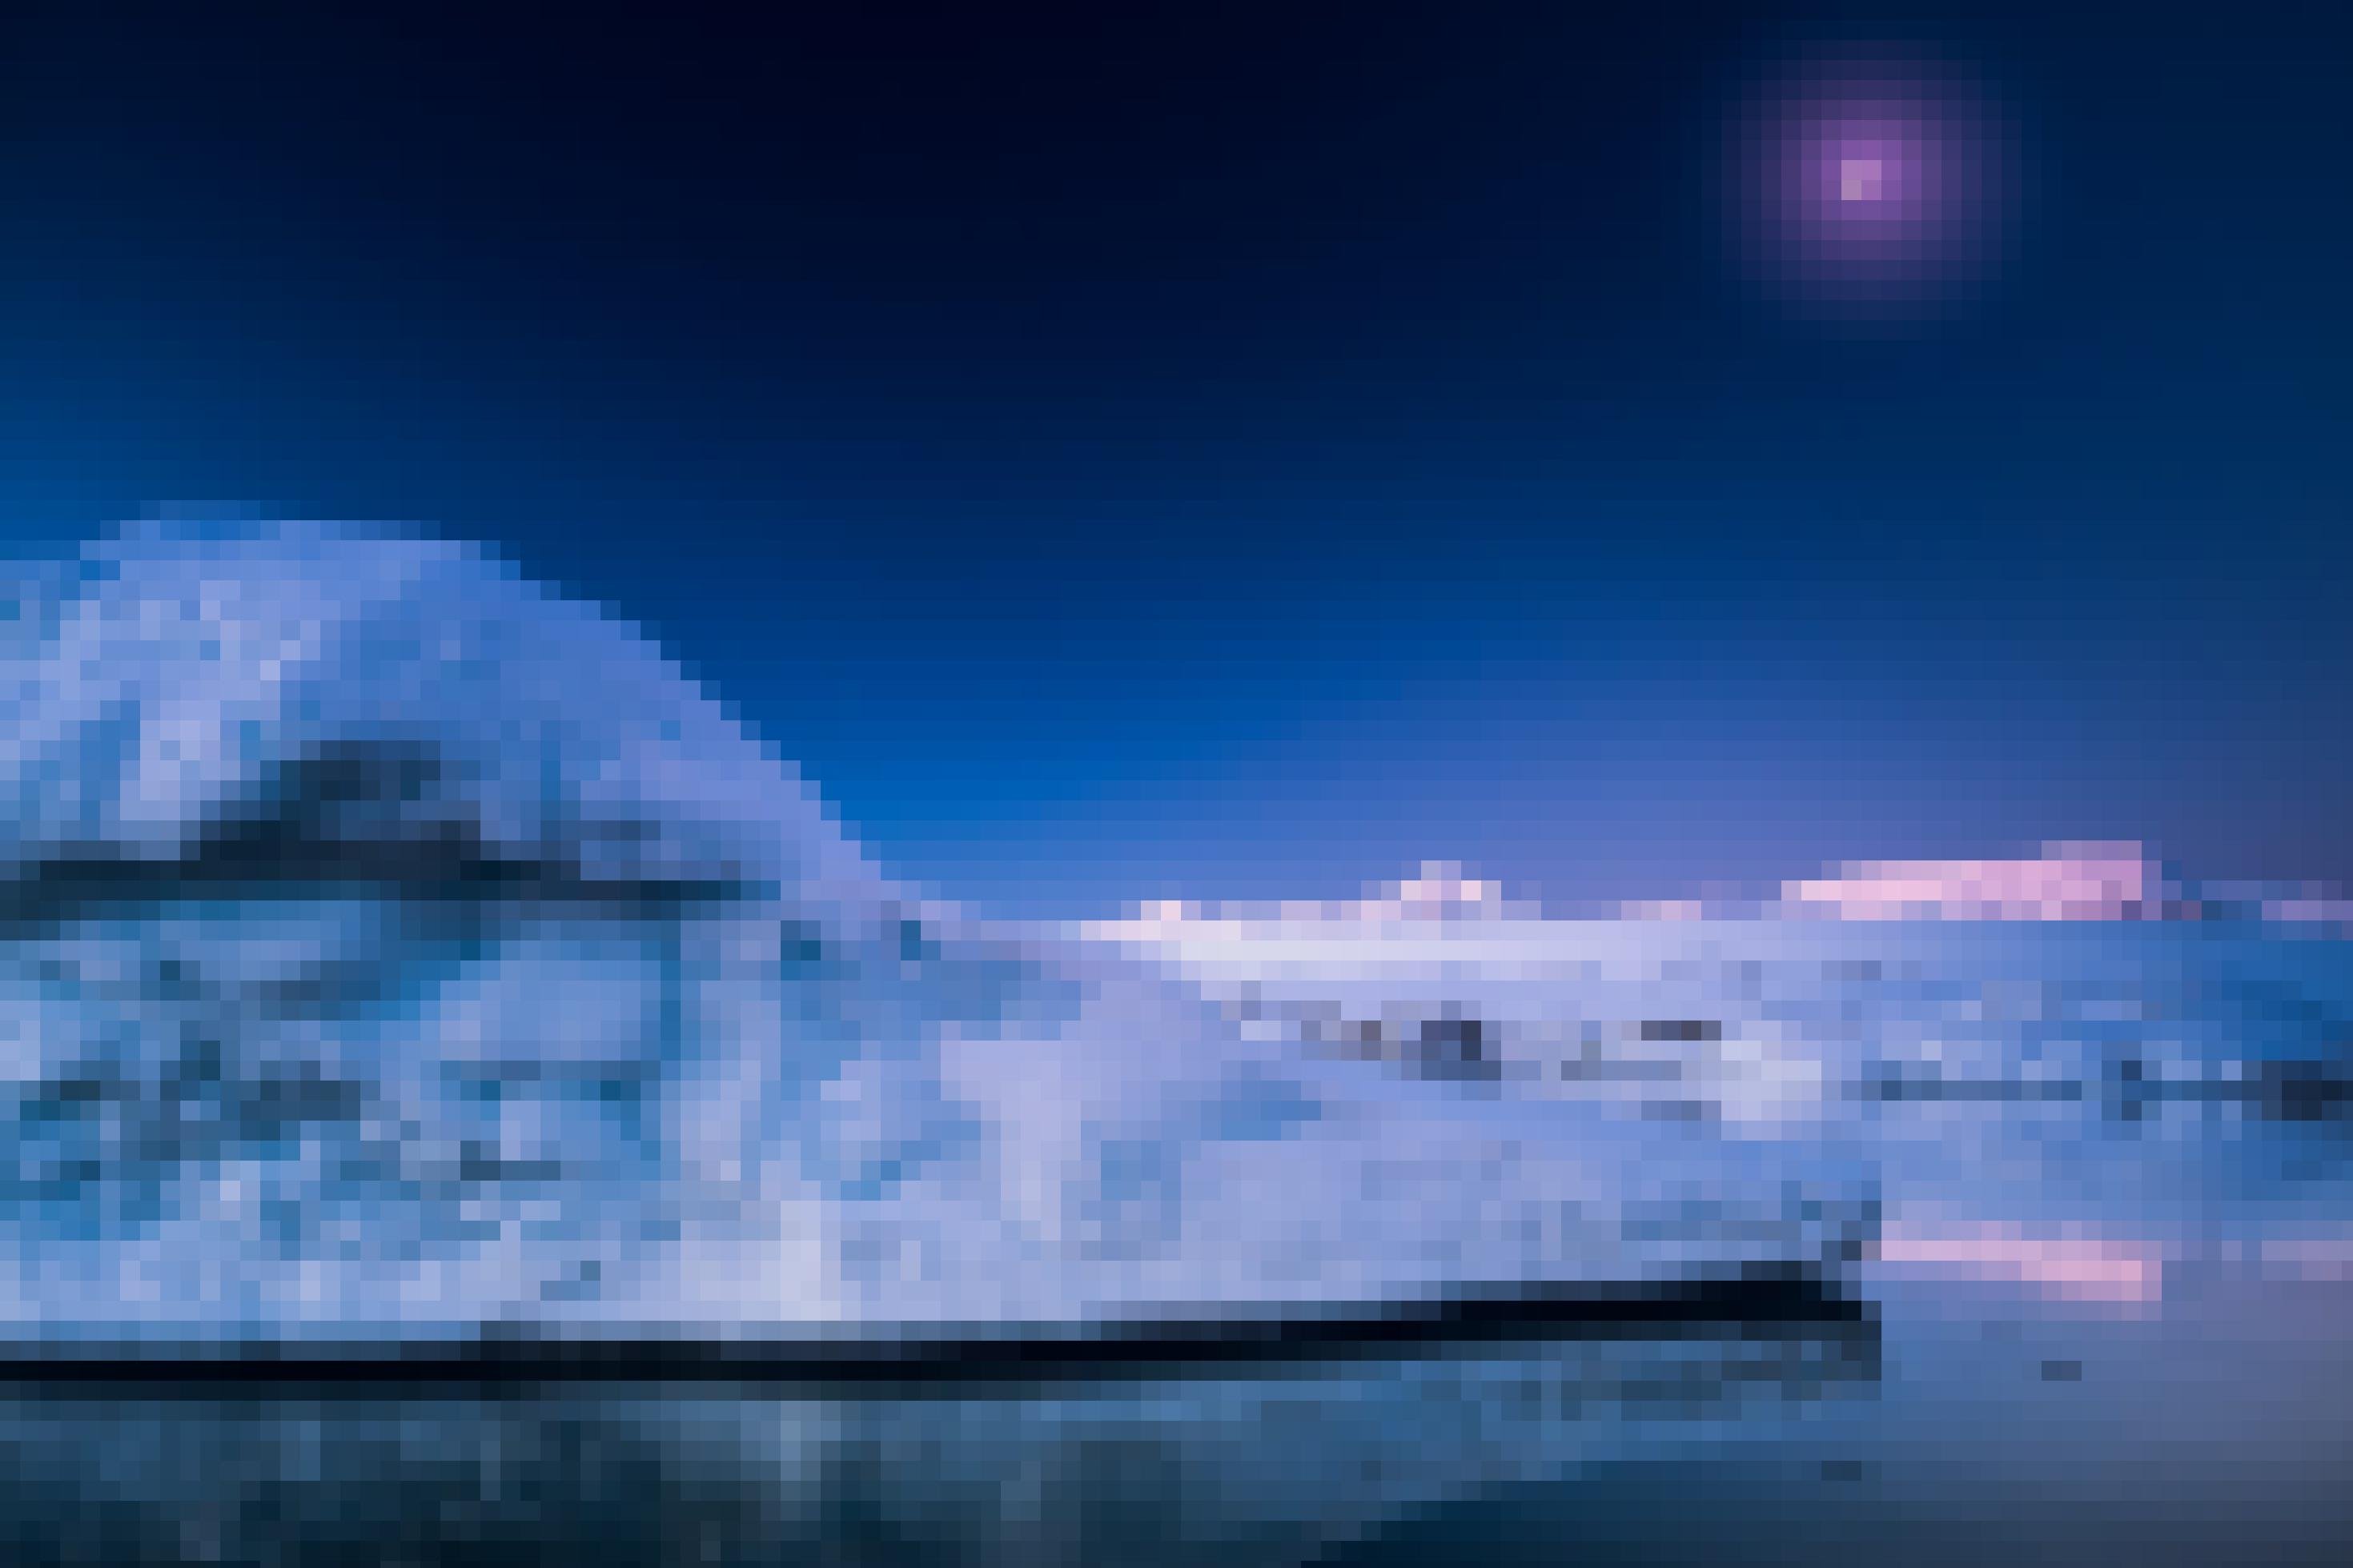 Bild aus der Antarktis. Ein Eisberg schwimmt im Wasser, im Hintergrund sieht man noch größere Berge aus Eis.